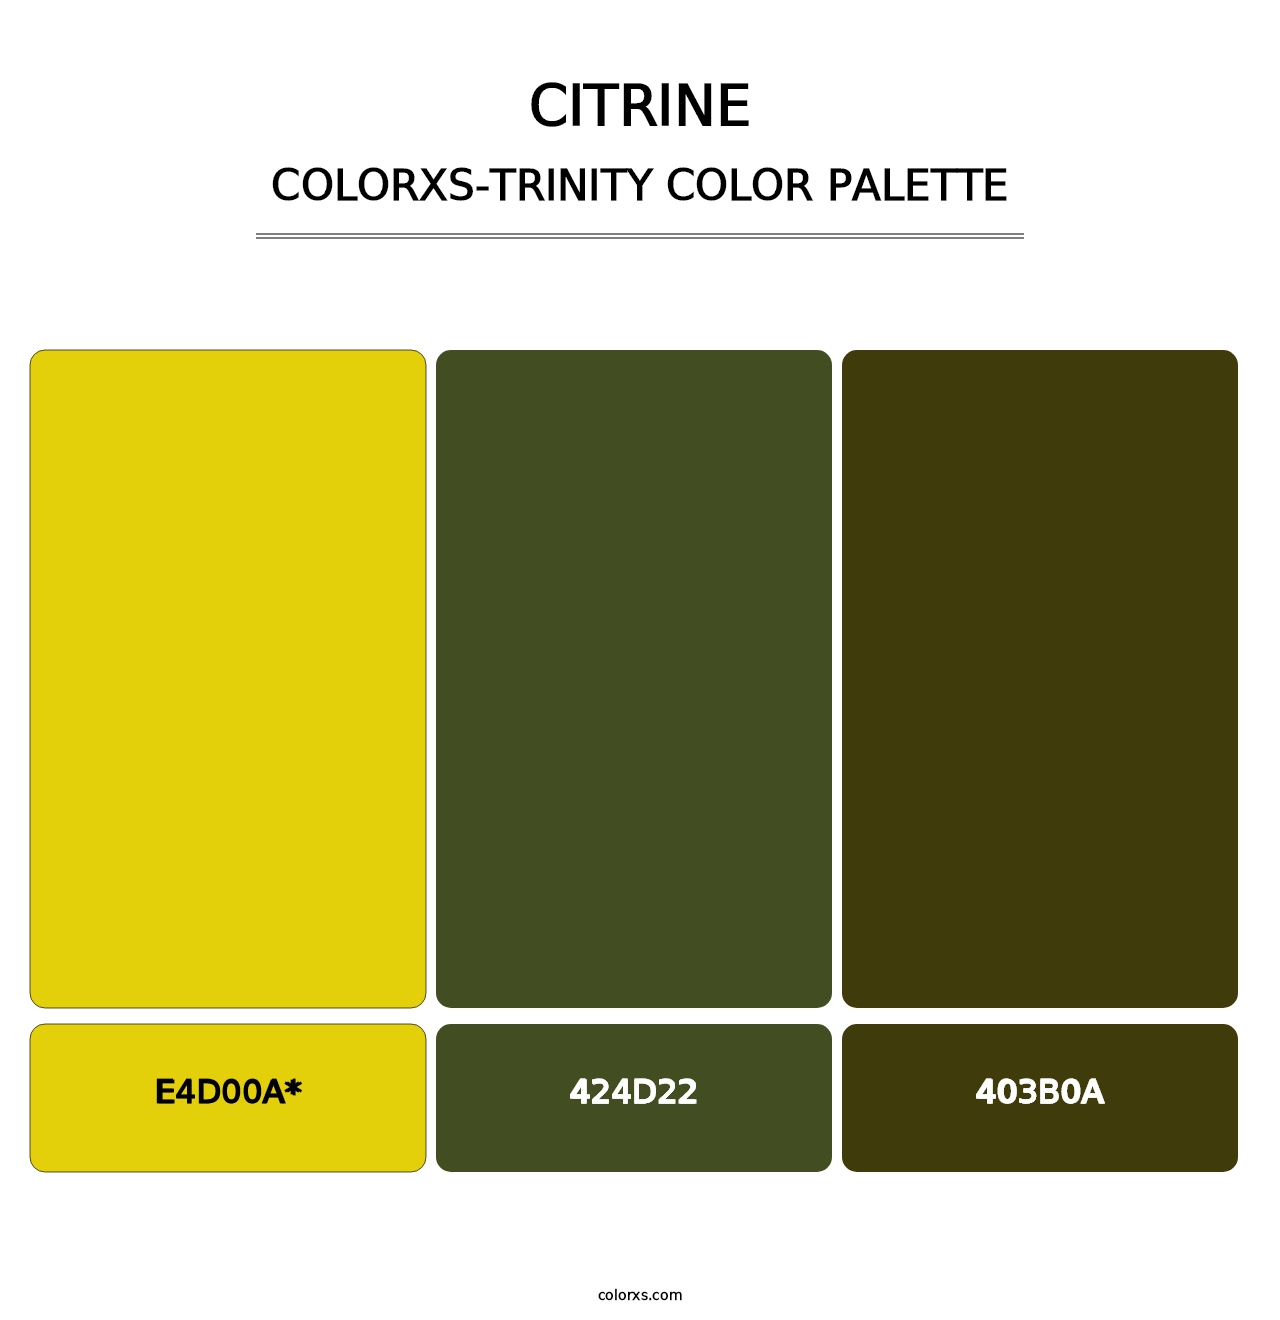 Citrine - Colorxs Trinity Palette